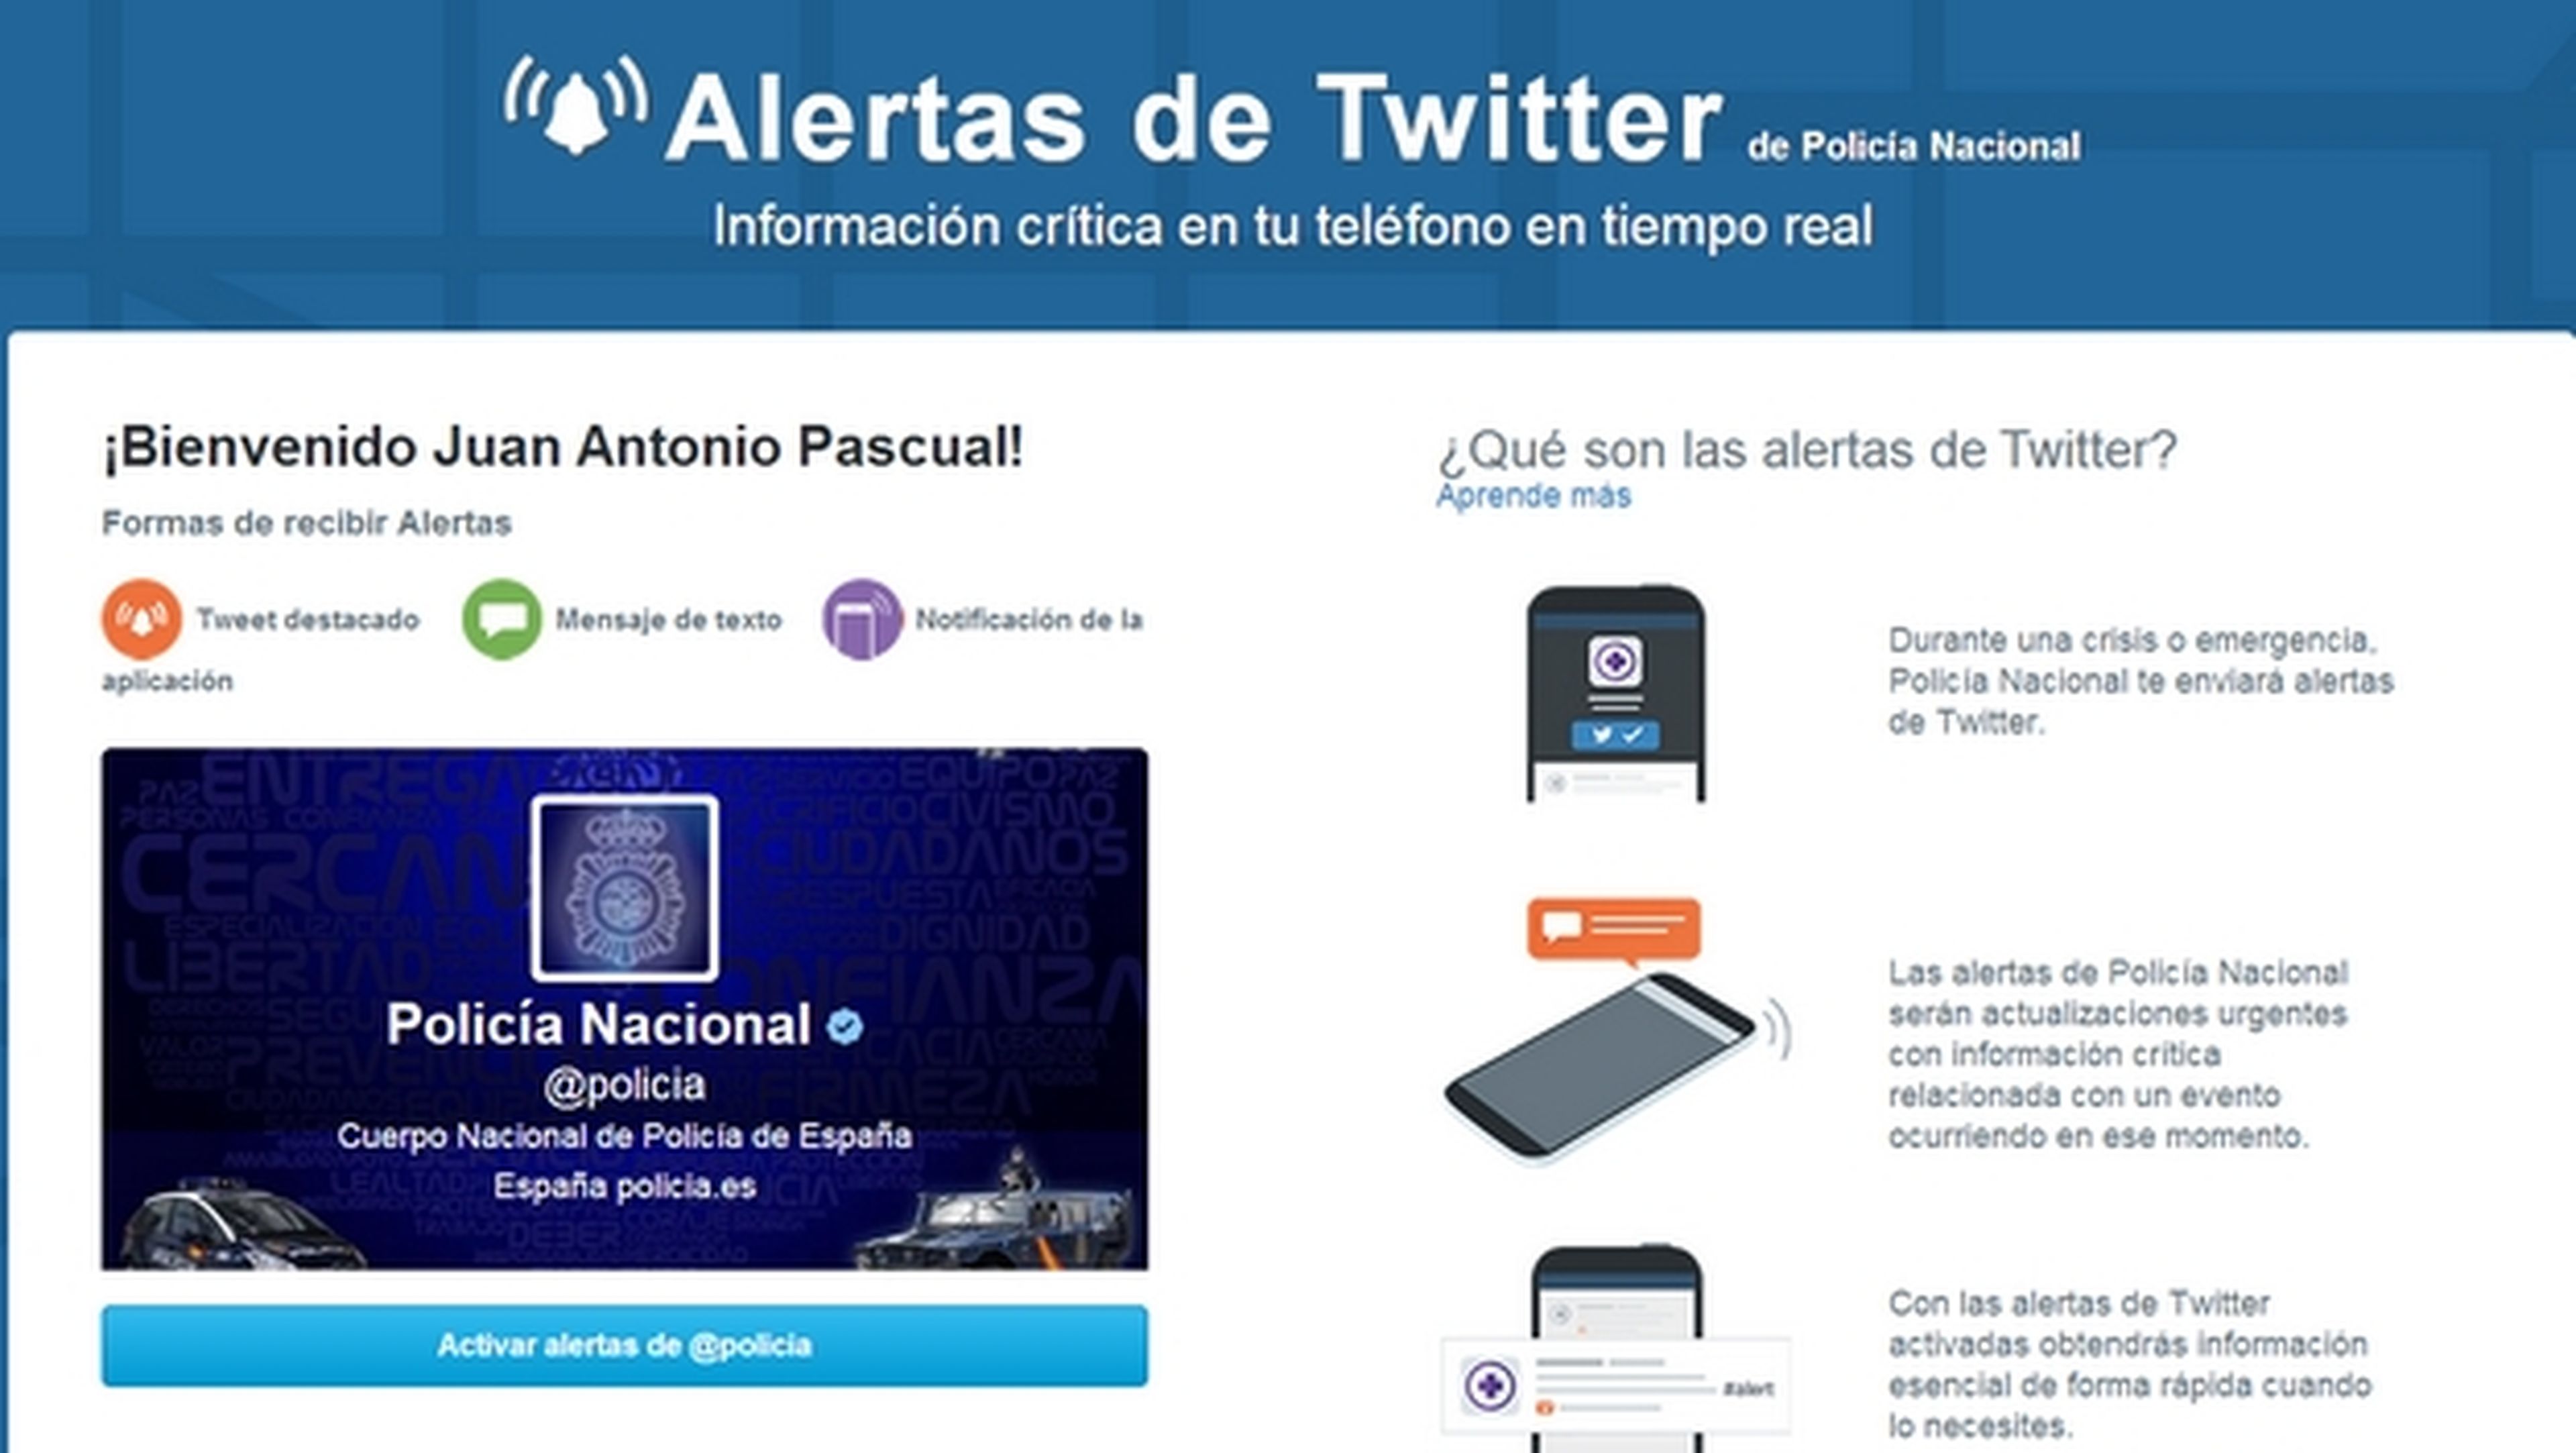 La Policía Nacional española estrena las Alertas de Twitter